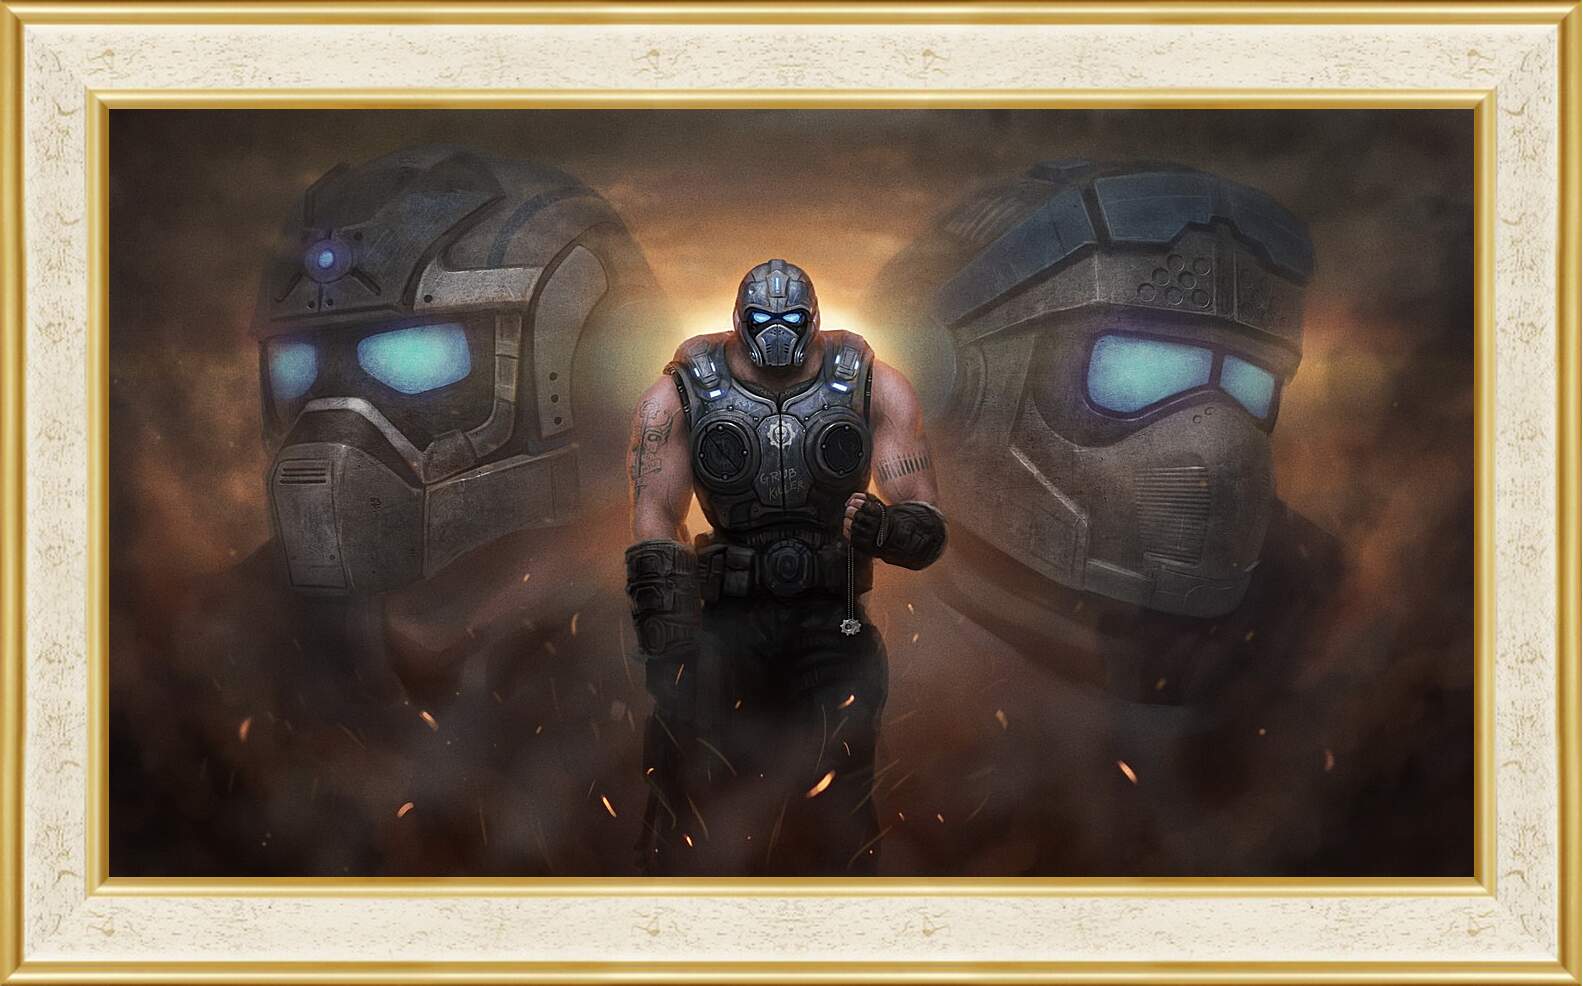 Картина в раме - Gears Of War 3
